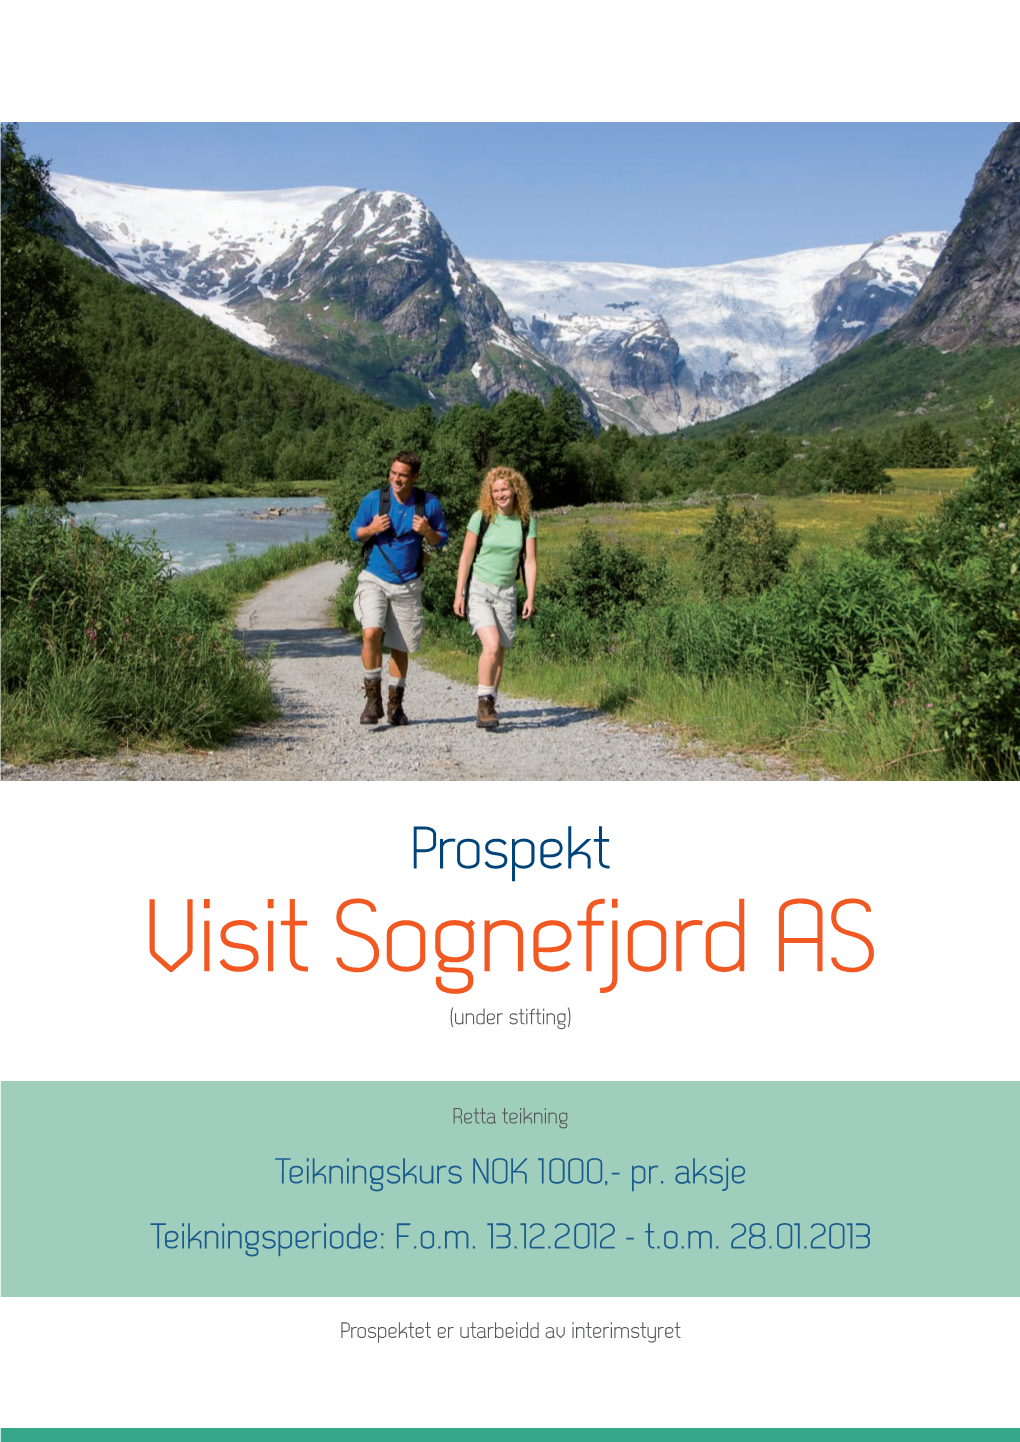 Prospekt Visit Sognefjord AS (Under Stifting)